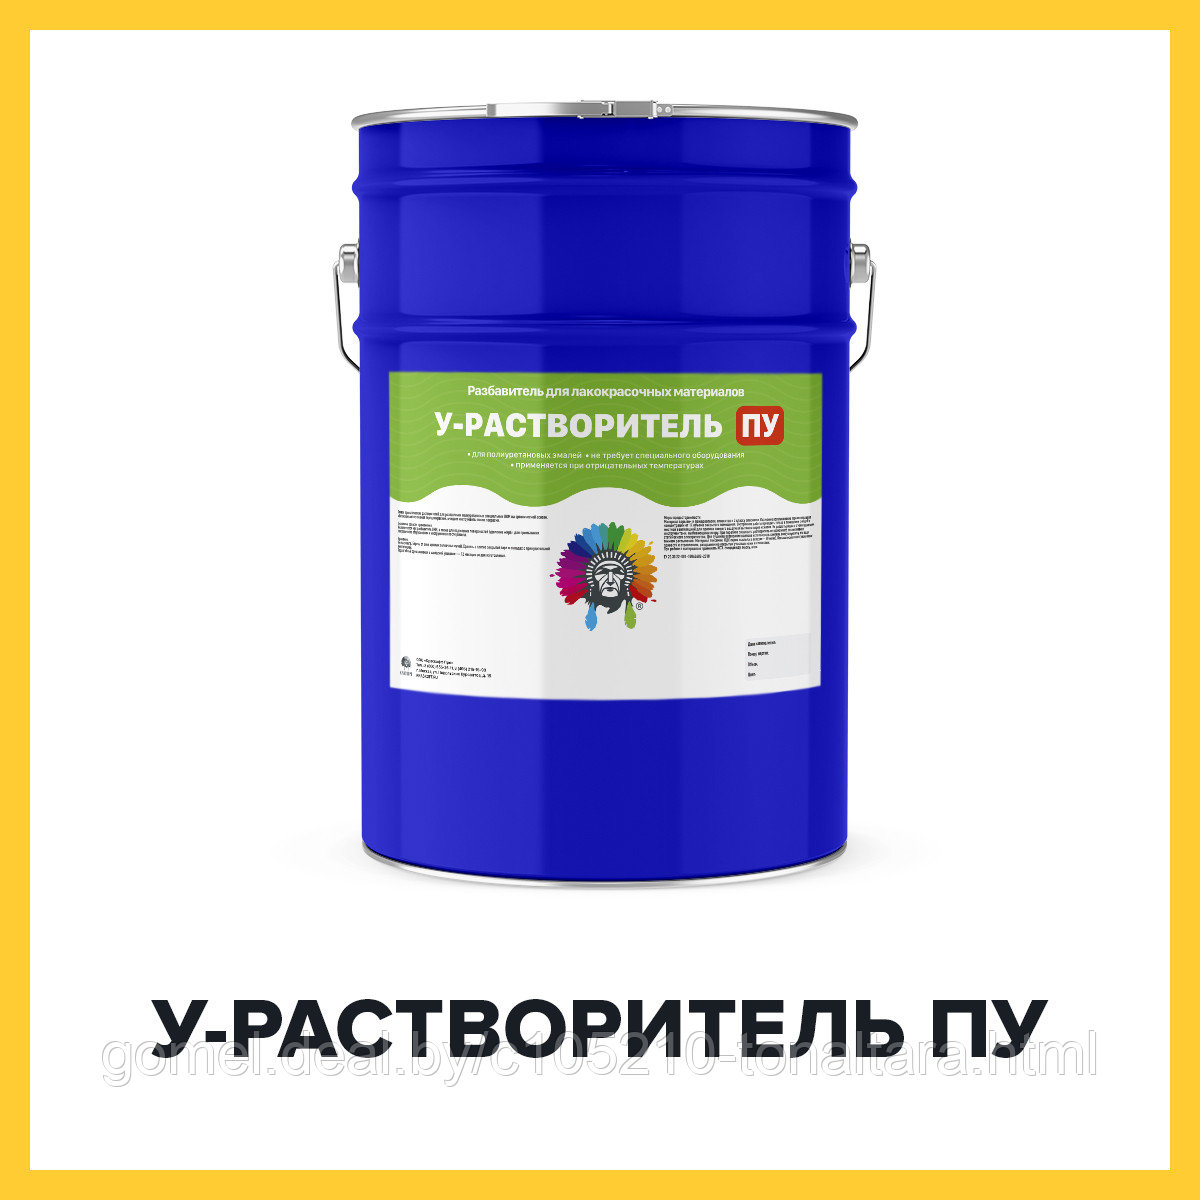 У-РАСТВОРИТЕЛЬ ПУ (Краскофф Про) – растворитель (разбавитель) для лакокрасочных материалов на полиуретановой